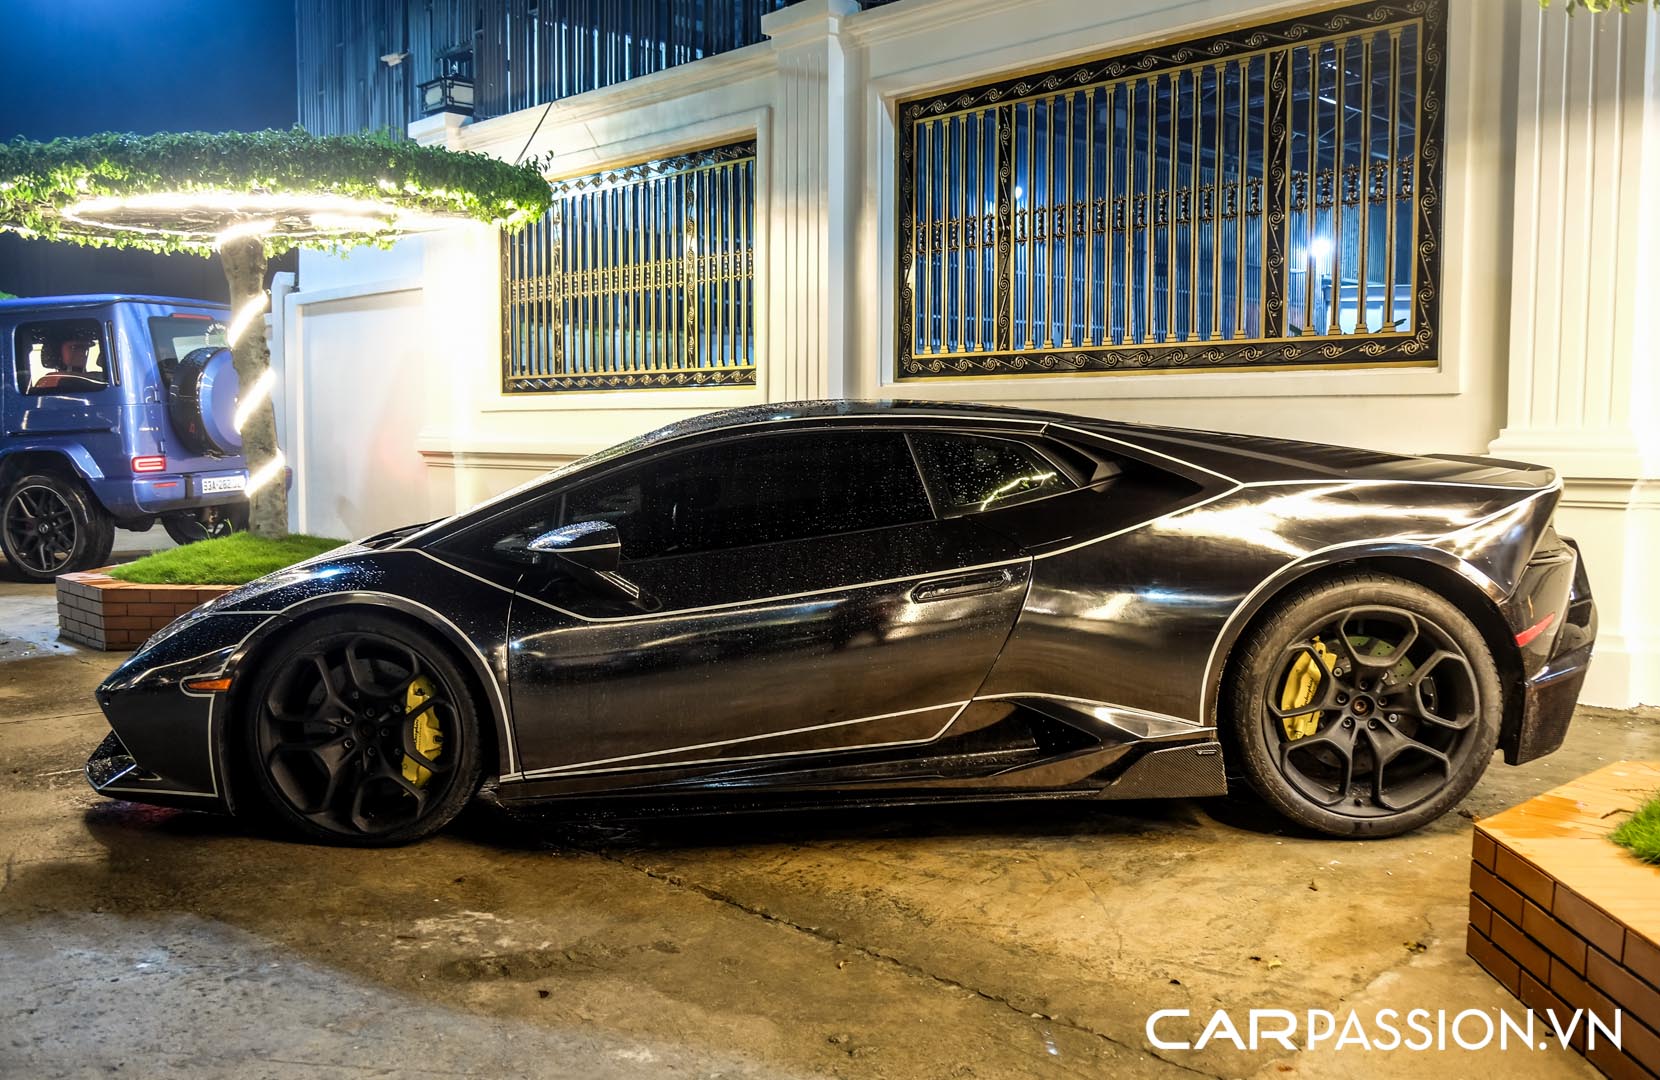 CP-Bộ đôi Lamborghini Huracan độ độc đáo36.jpg